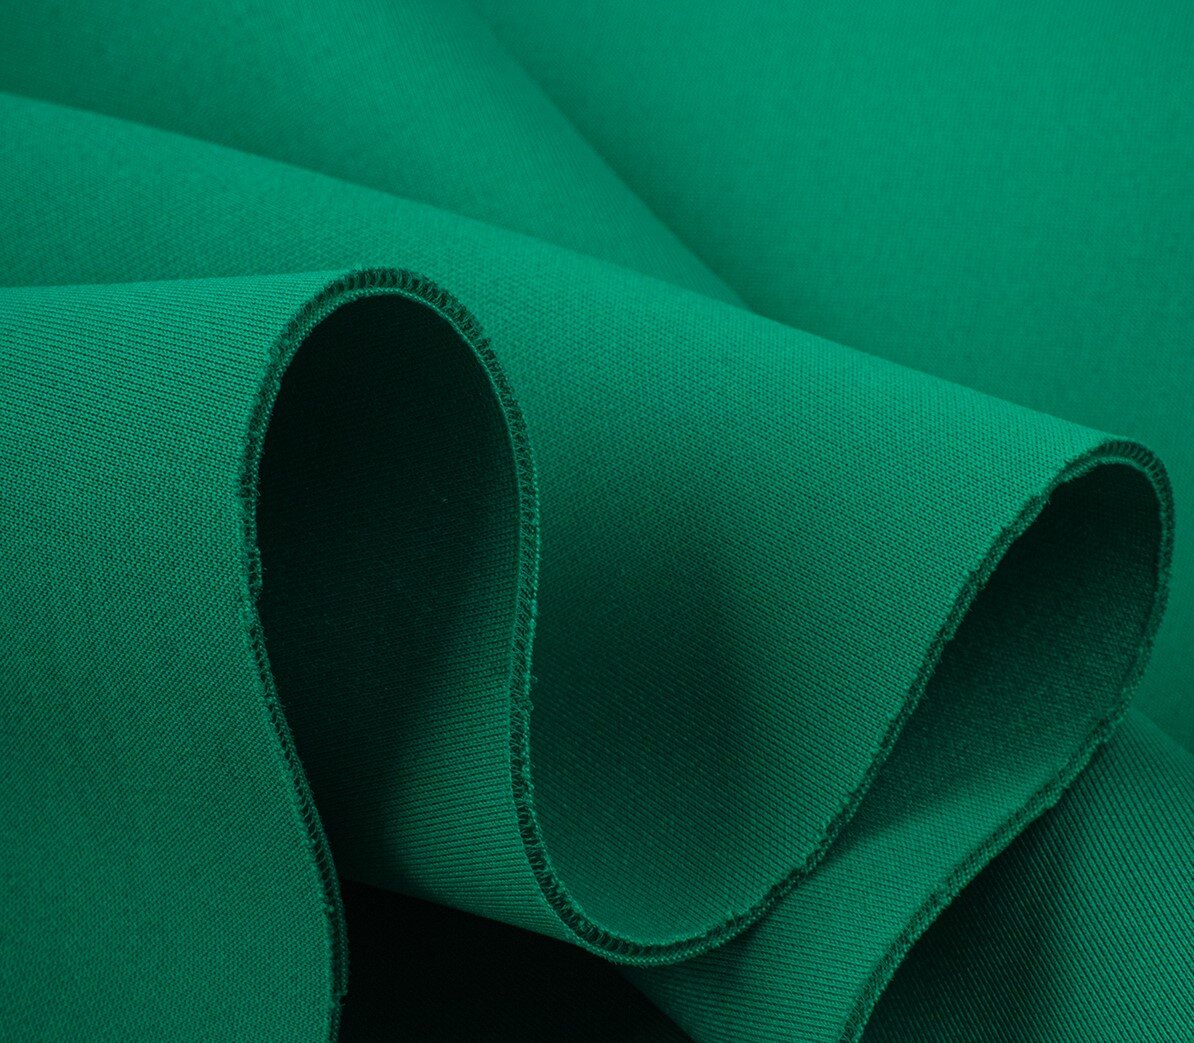 Ткань и трикотаж — два абсолютно разных вида полотен. Первый производят на ткацких установках, второй — на вязальных. Современная текстильная промышленность предлагает различный ассортимент трикотажа.-6